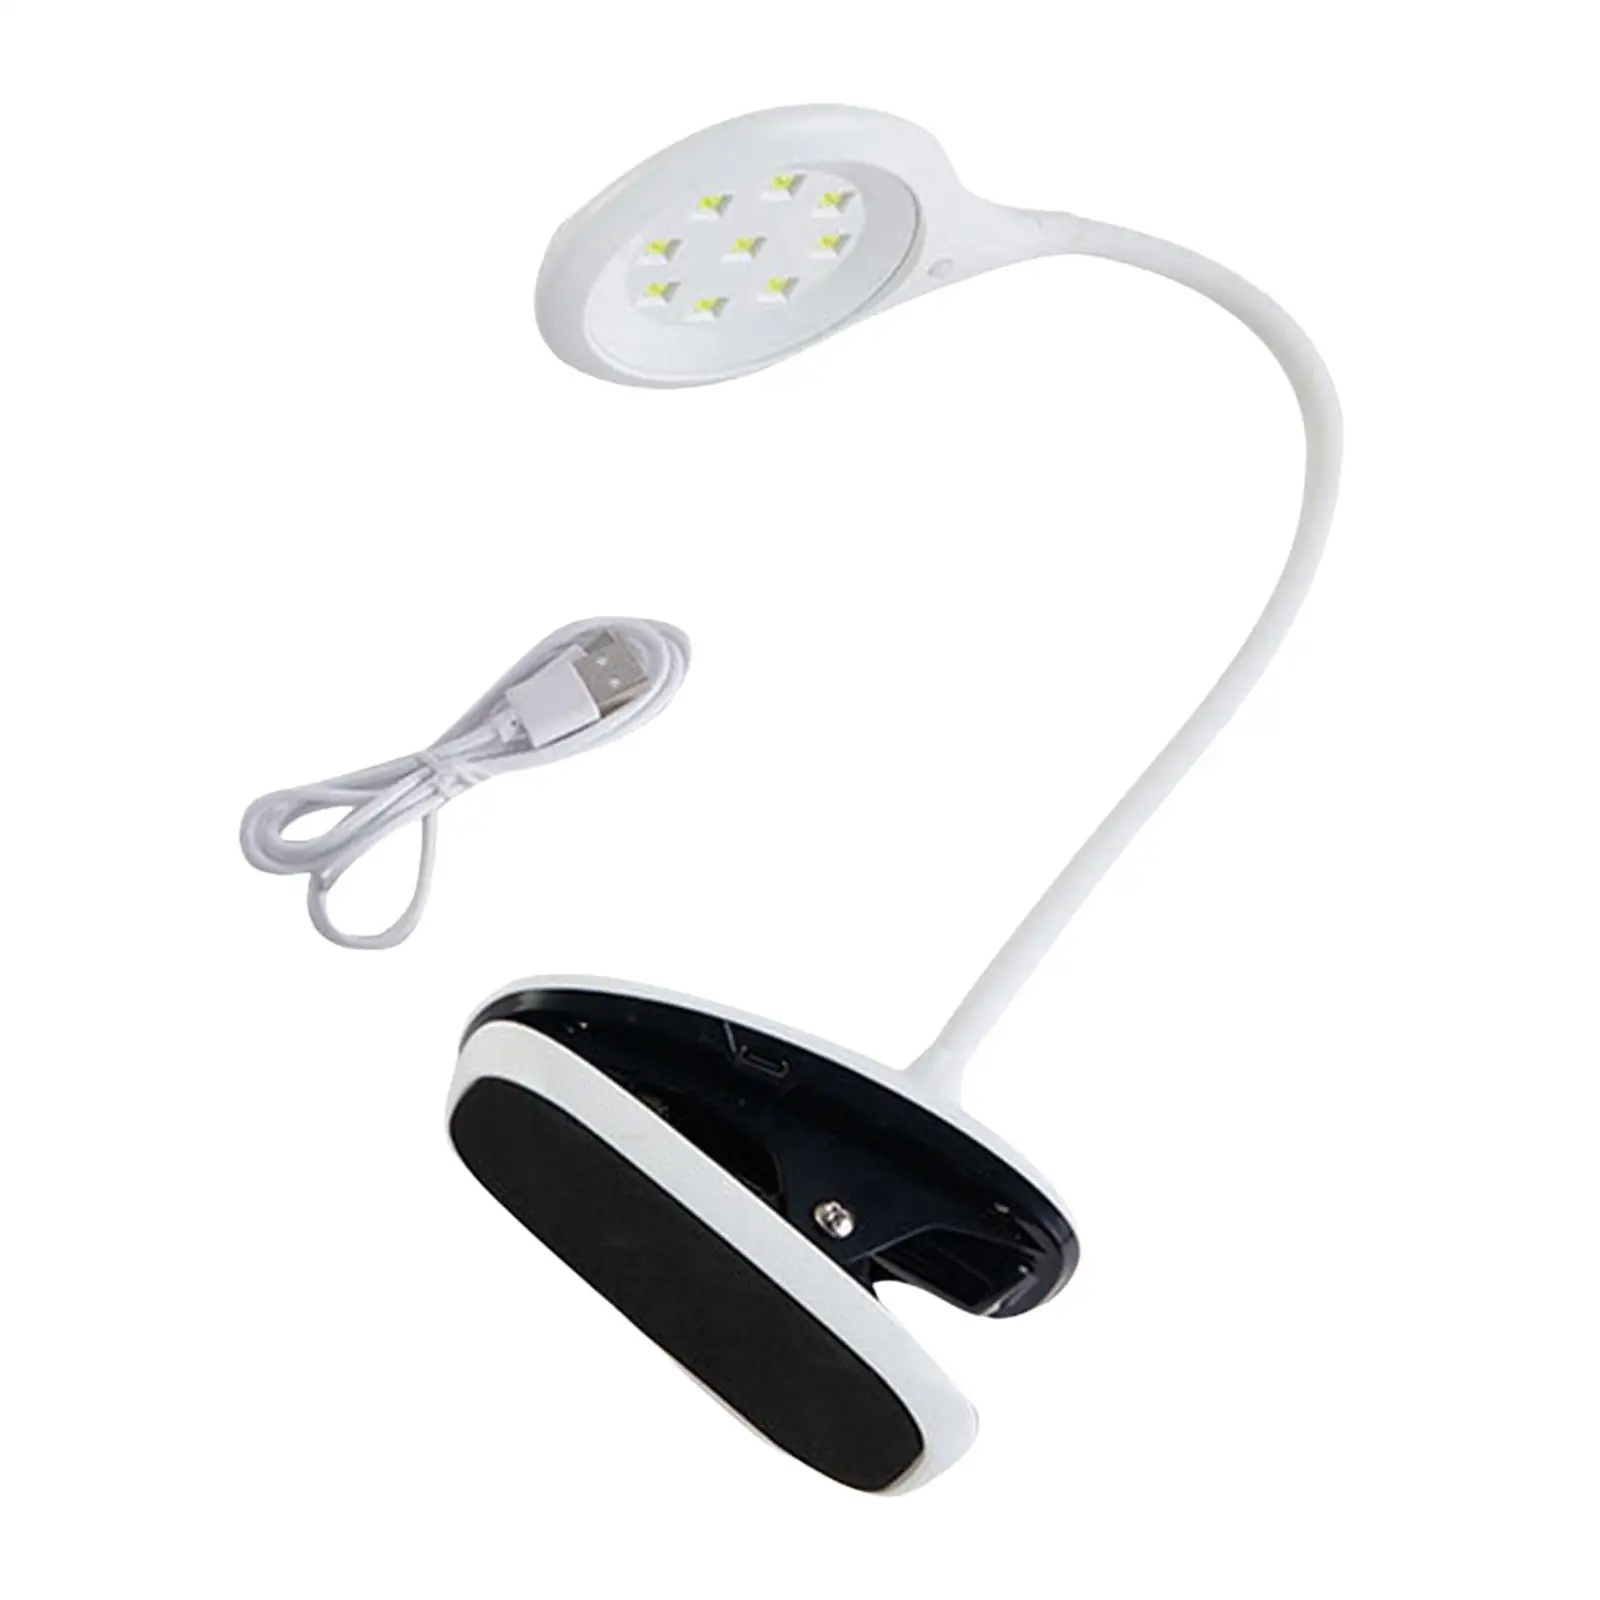 UV LED Nail Lamp Portable Small Quick Dry Nail Polish Dryer UV LED Light for Gel Nail Mobile Repair Home Salon Manicure Decor